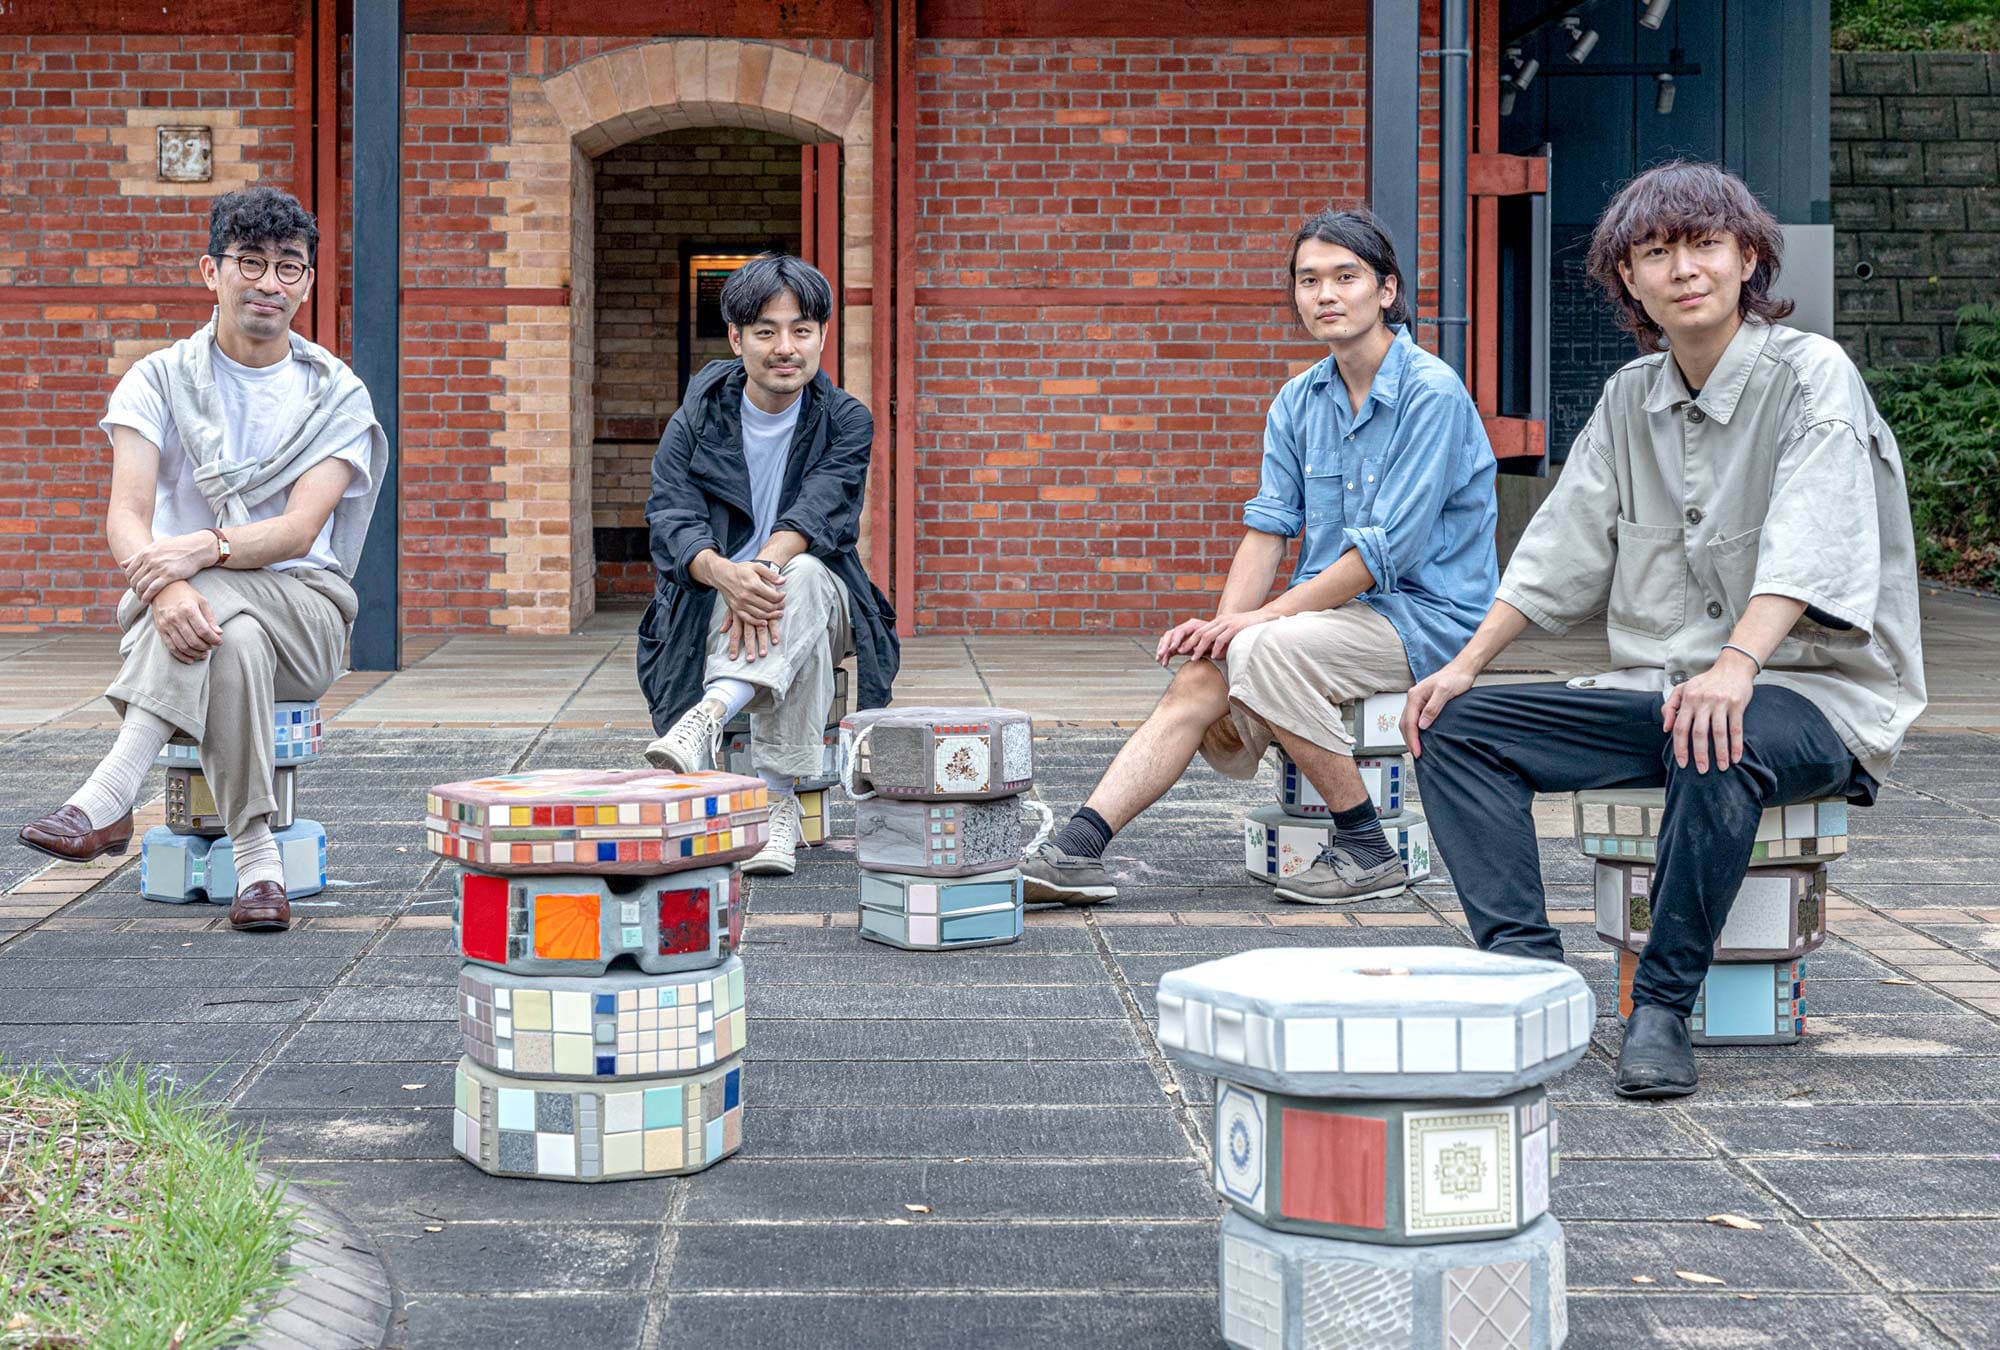 東京藝術大学 中山研究室　左から中山准教授、湯浅助手、藤井さん、岩崎さん　完成した「タイルアートの重石」のスツールに座るみなさん。